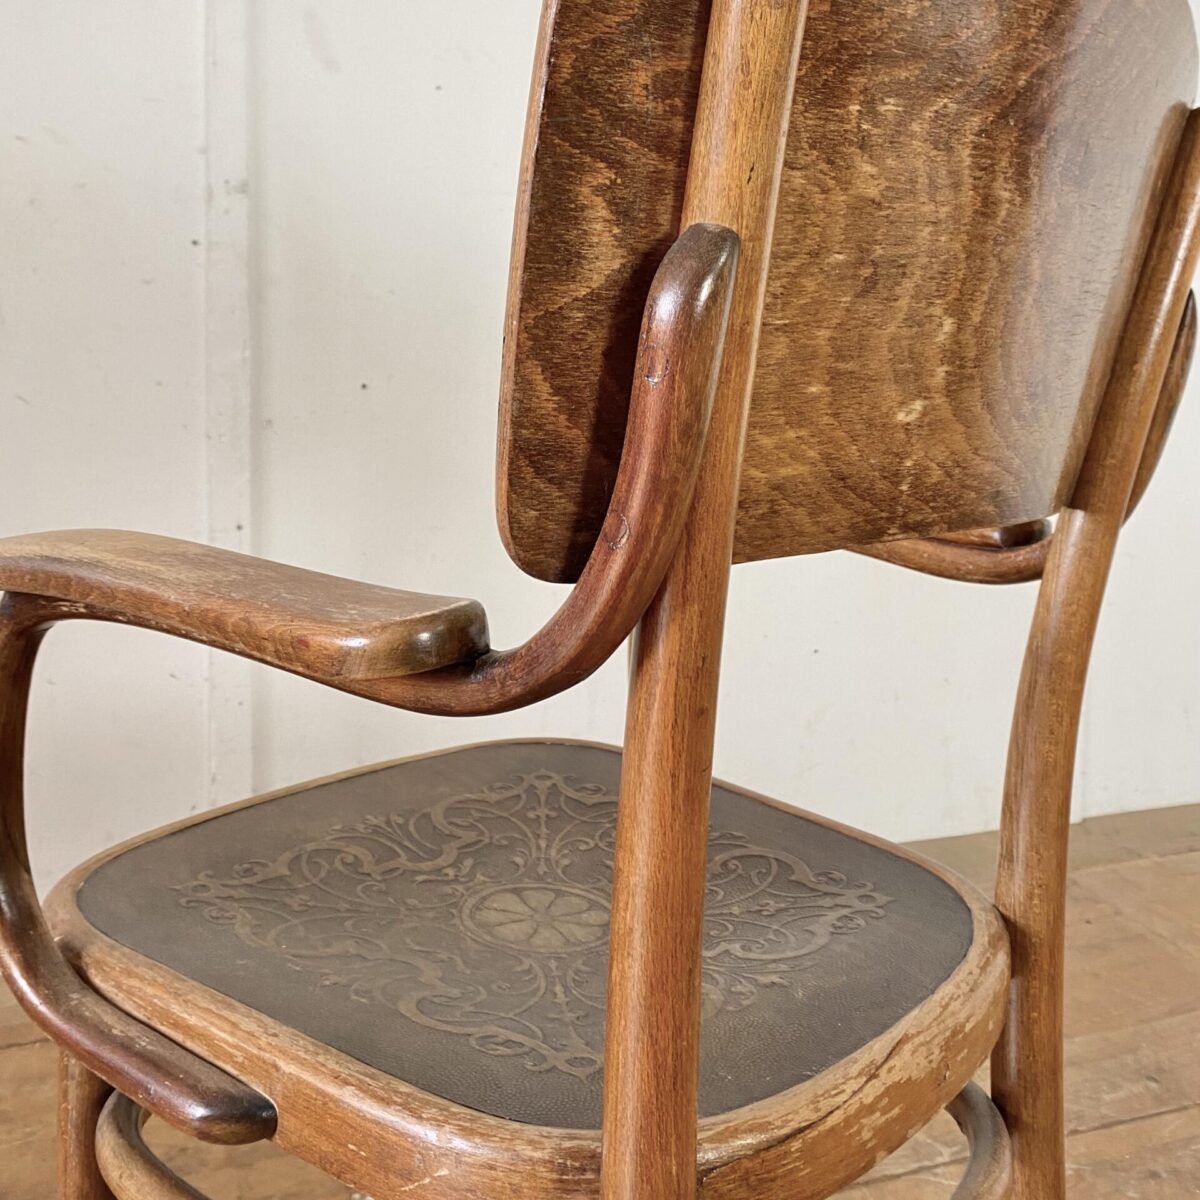 Deuxieme.shop Bugholzstühle Thonet Armlehnstühle Model 57 Jahrgang 1895. Preis pro Stuhl. Die Stühle sind in stabilem Zustand, die Lack Oberflächen sind teilweise etwas abgewetzt, Alterspatina in verschiedenen Brauntönen. 